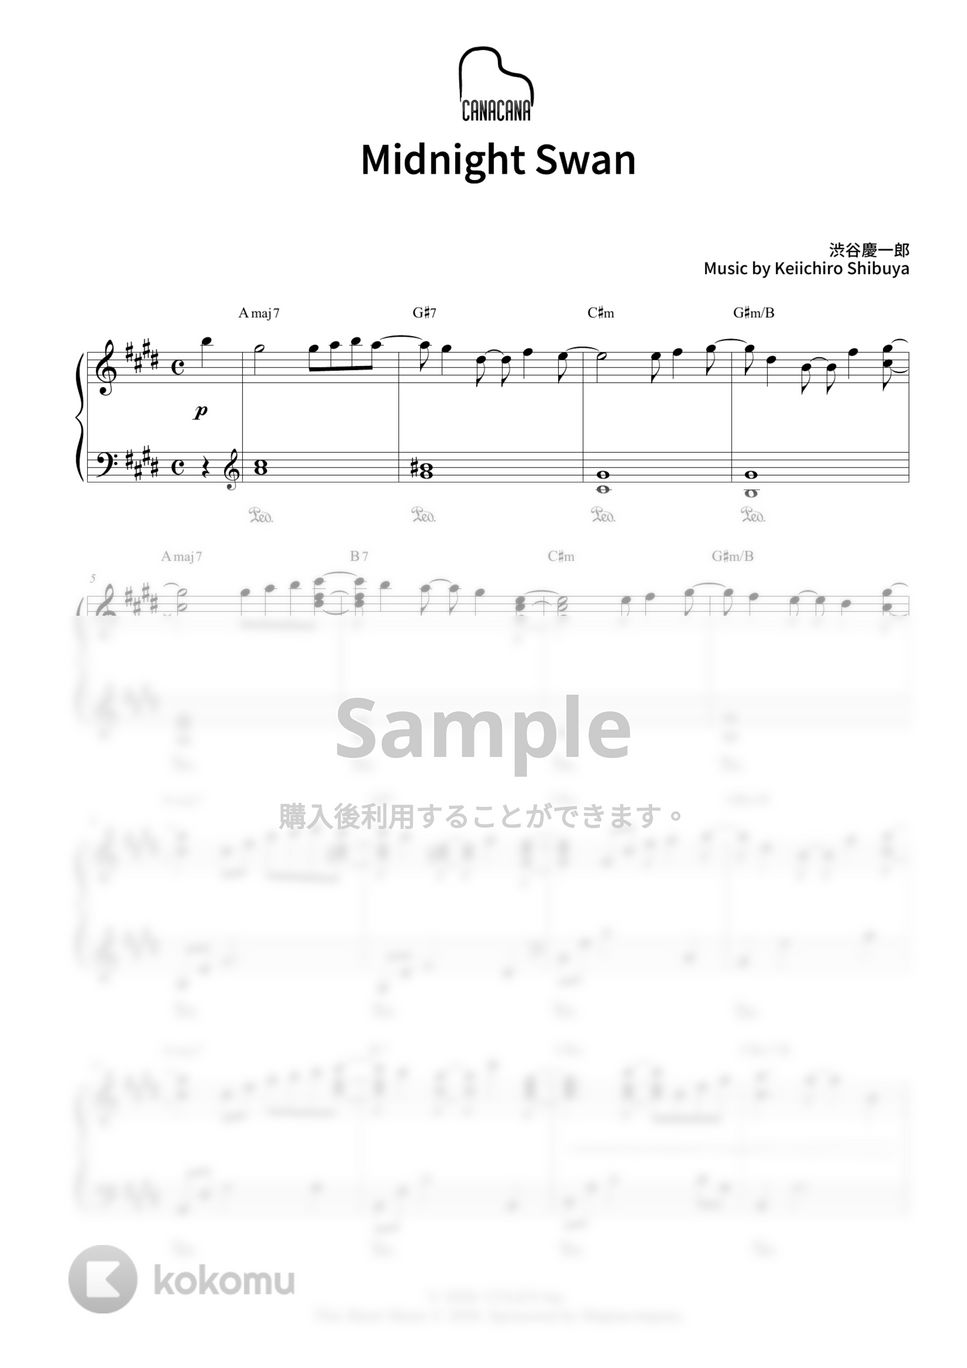 渋谷慶一郎 - Midnight Swan (映画『ミッドナイトスワン』主題歌) by CANACANA family